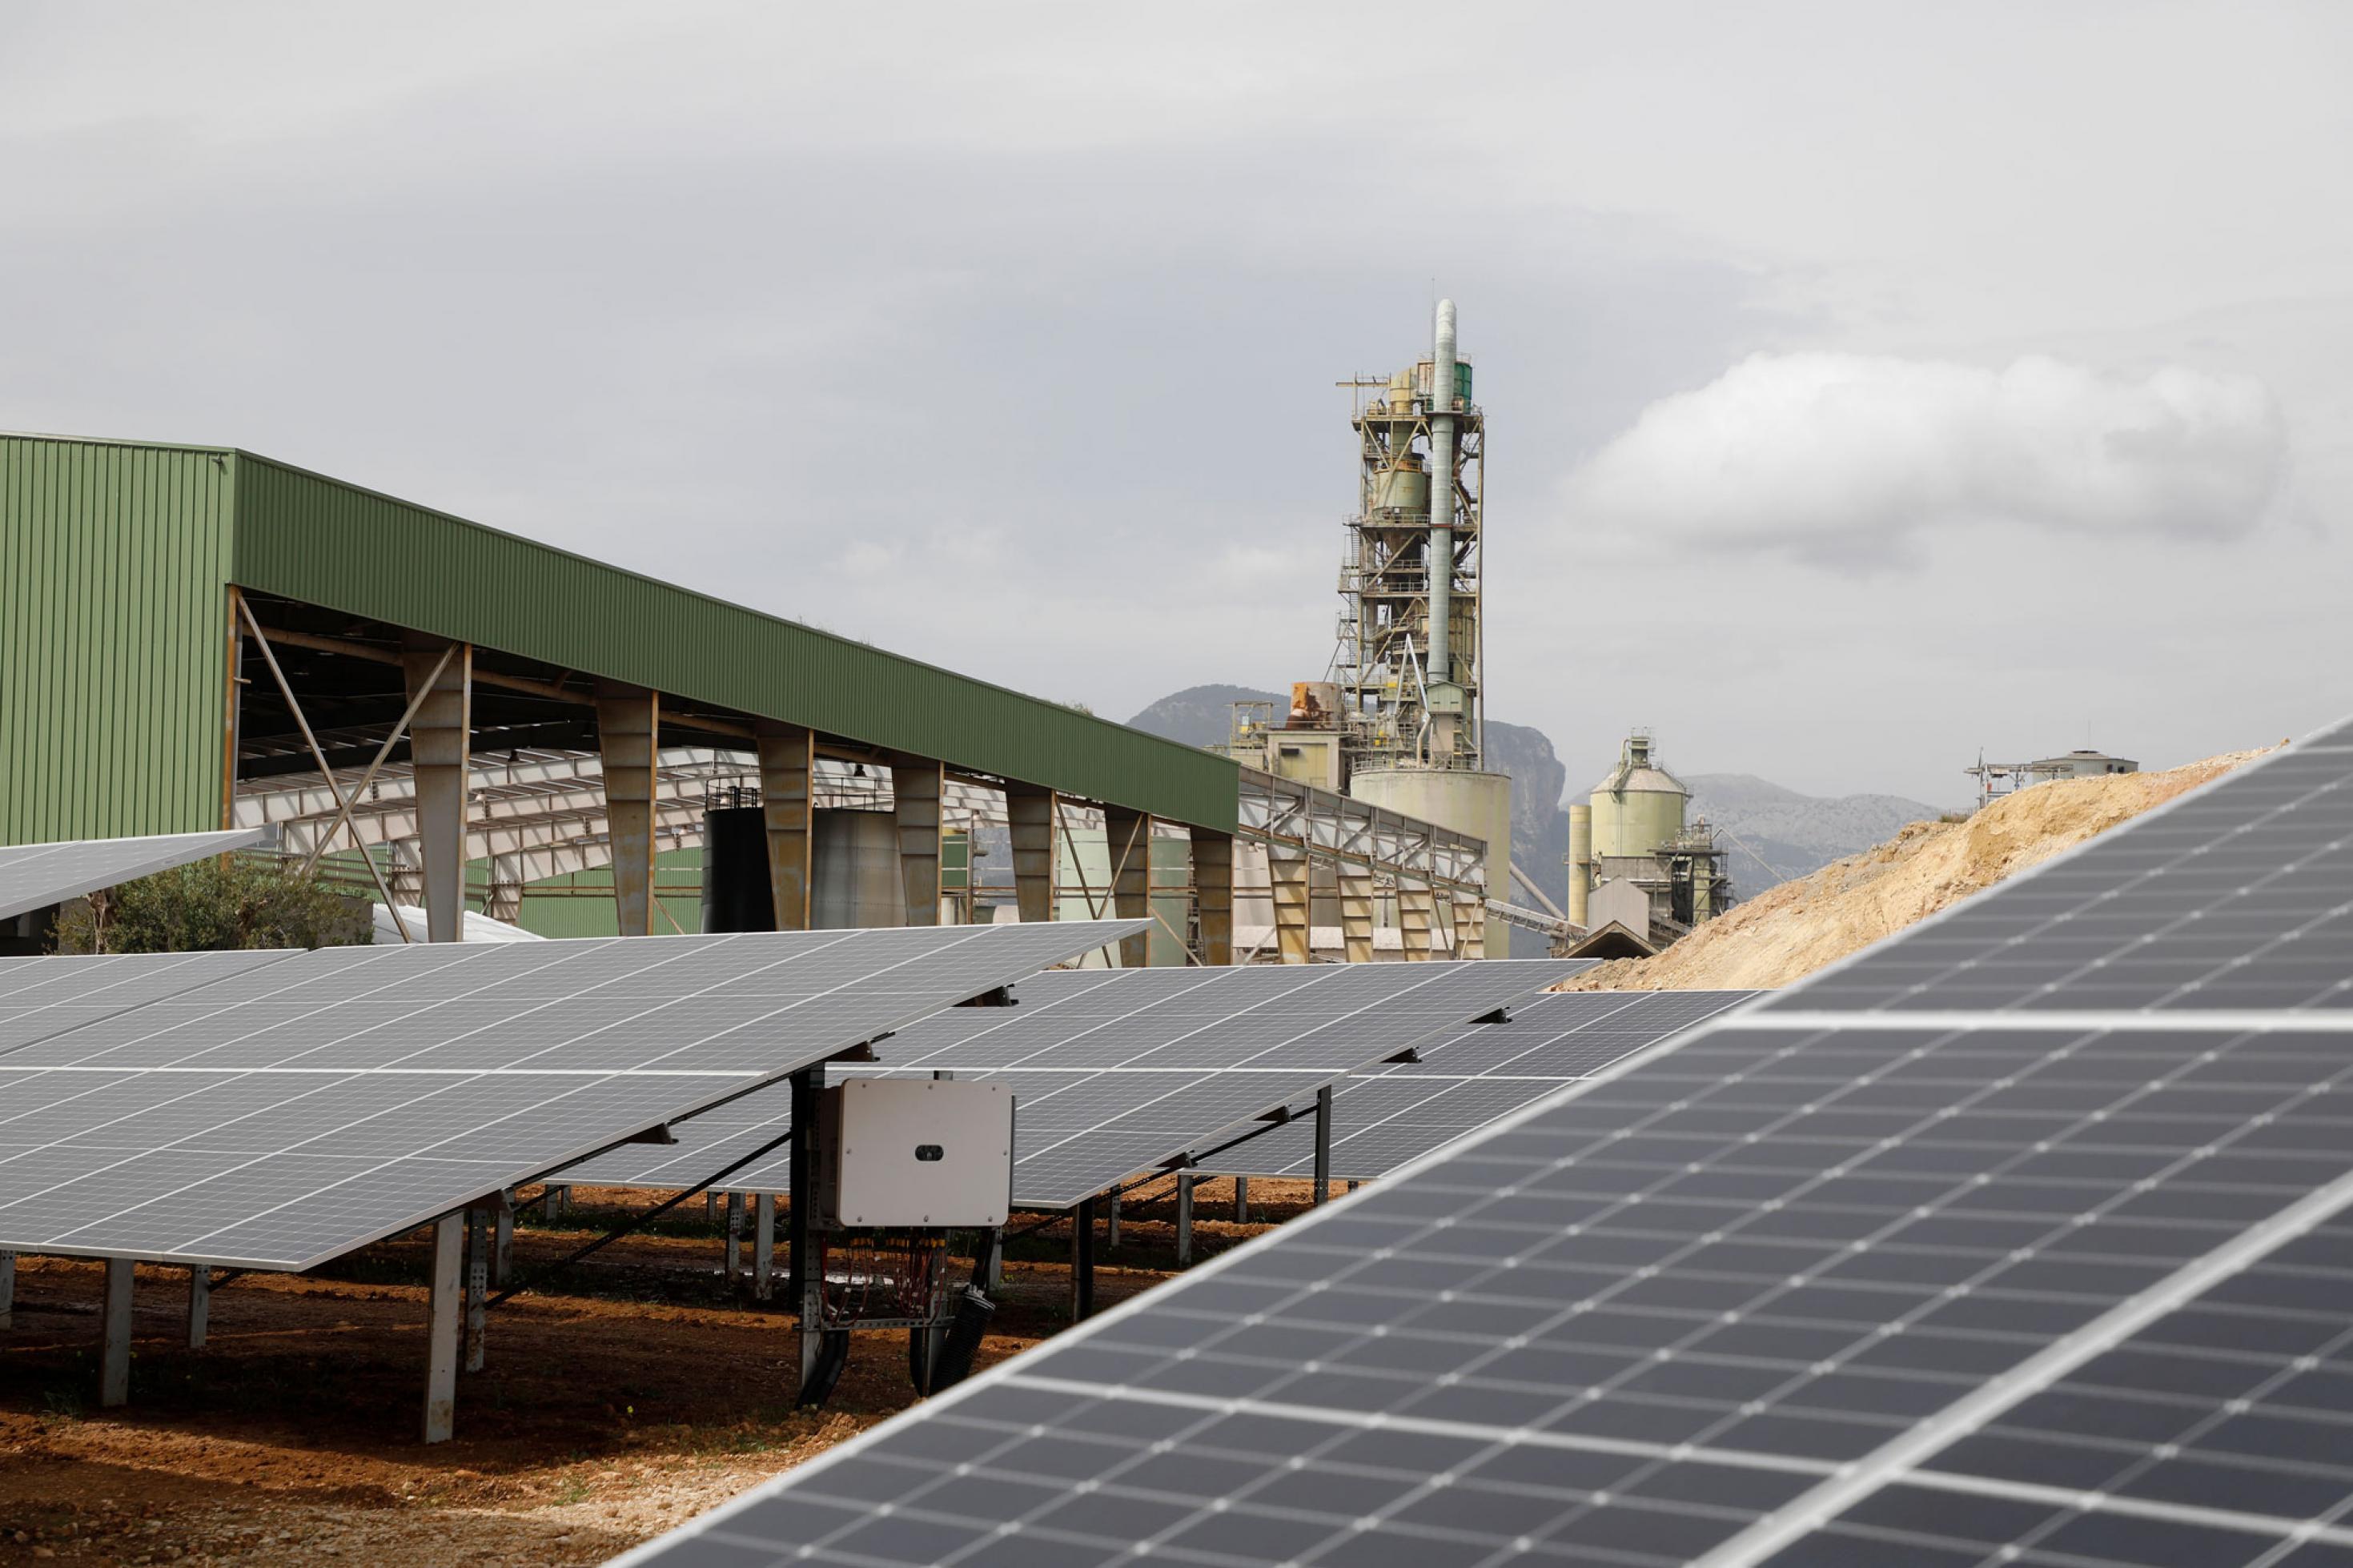 Auf dem Bild ist eine Photovoltaikanlage zu sehen, im Hintergrund stehen Fabrikschlote. Mit Hilfe von Solarstrom wird auf Mallorca in einer ehemaligen Zementfabrik grüner Wasserstoff produziert.